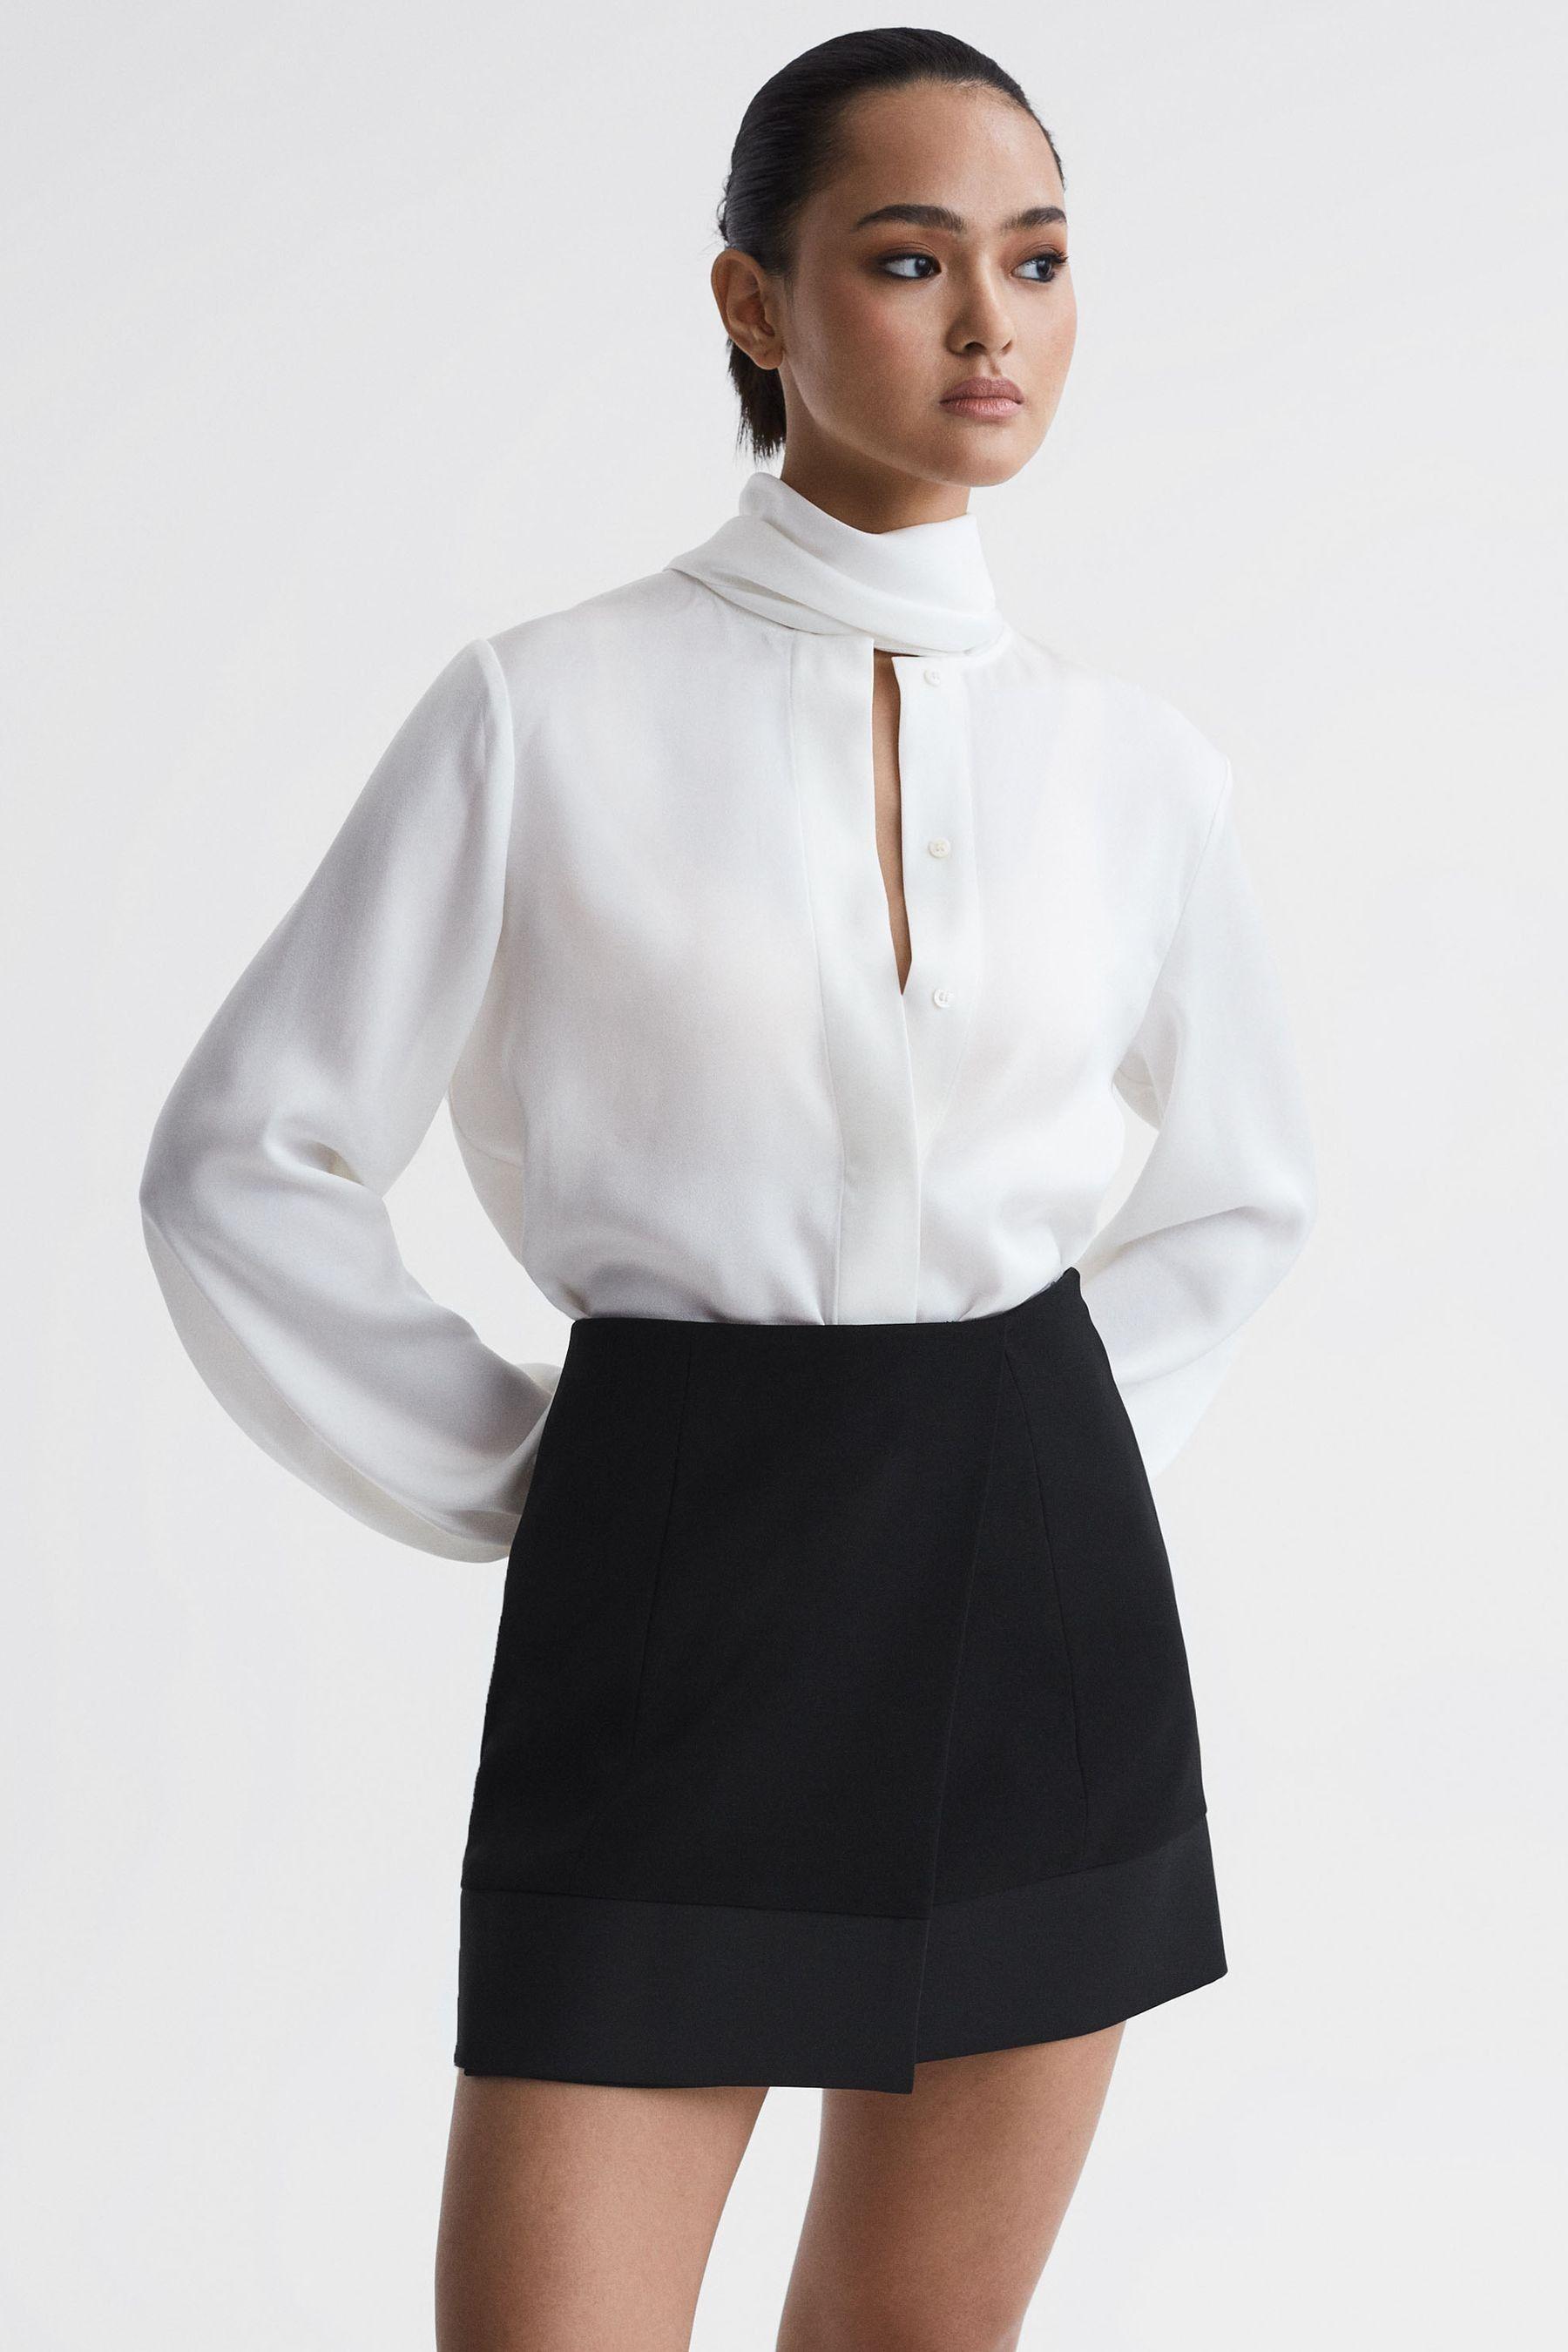 Reiss Ruby - Black Satin Trim Mini Skirt, Us 10 in White | Lyst